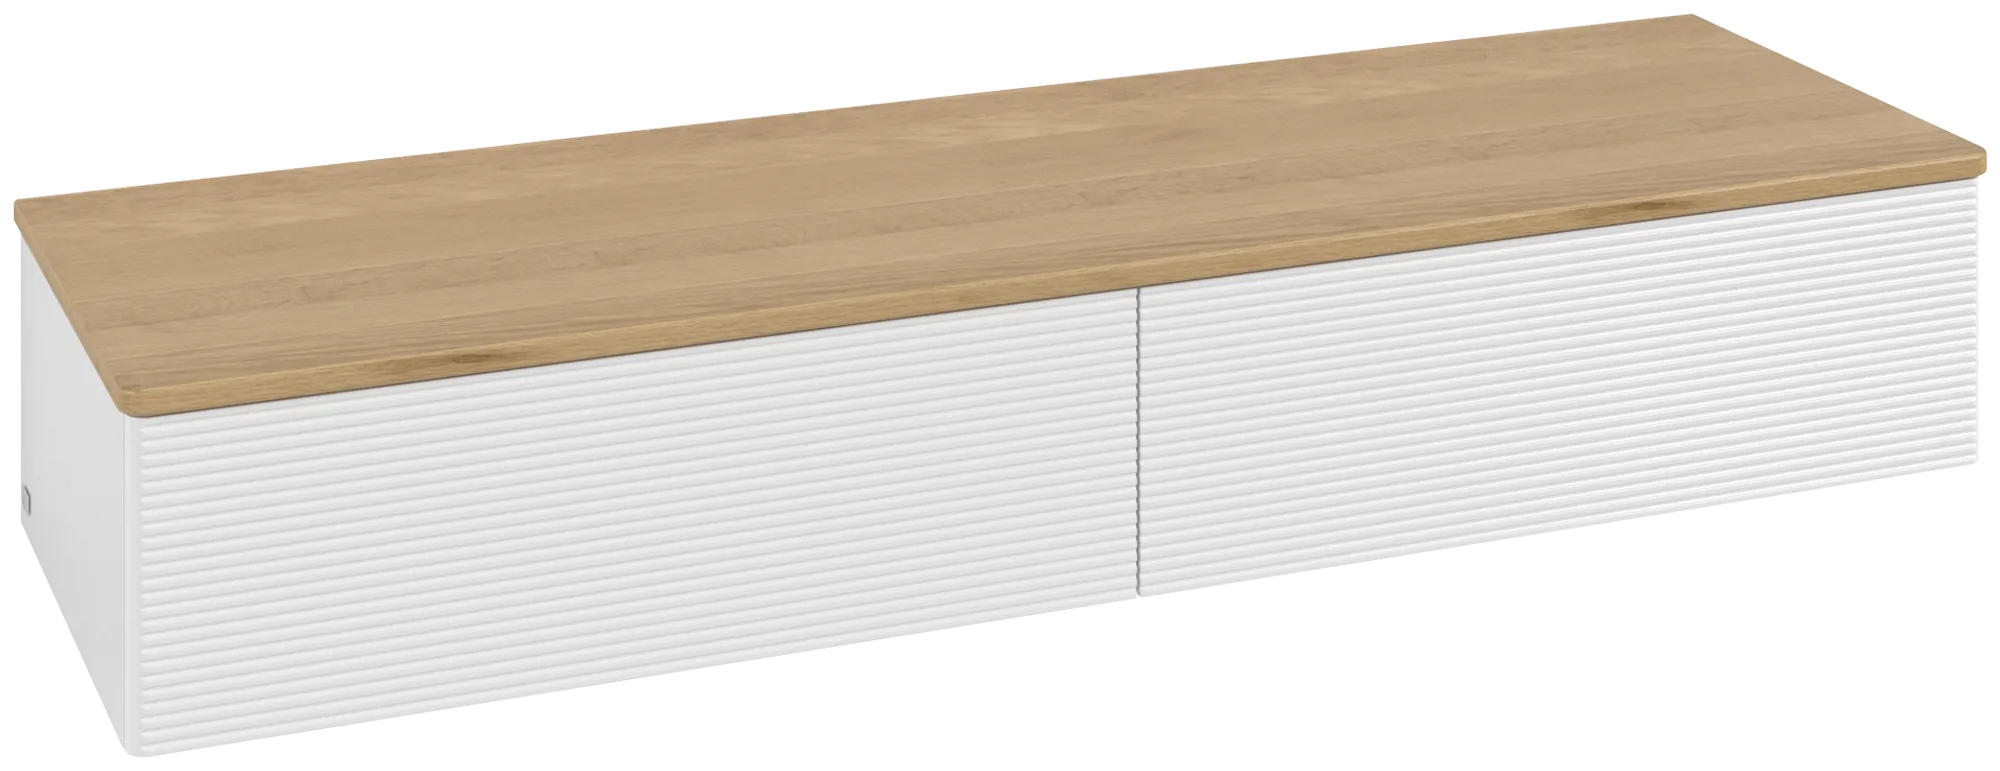 Bild von VILLEROY BOCH Antao Sideboard, mit Beleuchtung, 2 Auszüge, 1600 x 268 x 500 mm, Front mit Struktur, Glossy White Lacquer / Honey Oak #L42101GF